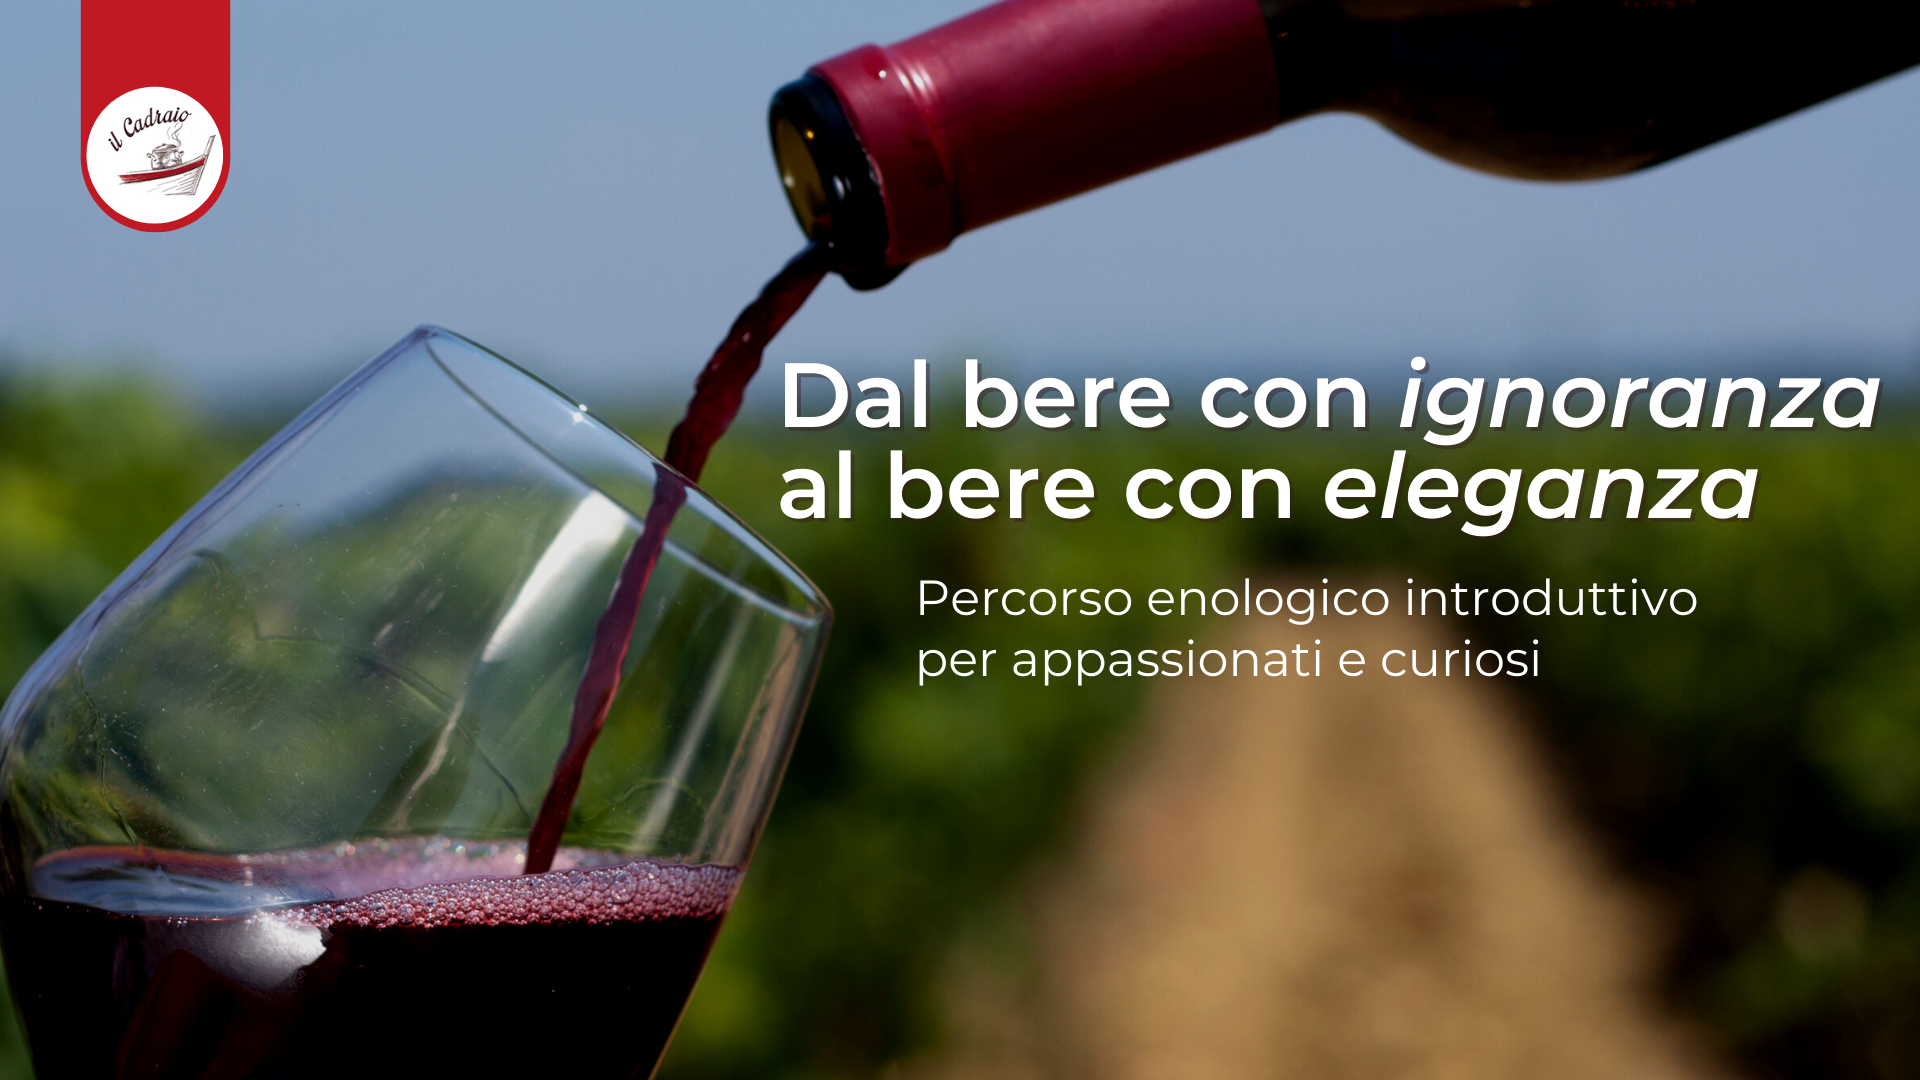 Dal bere con ignoranza al bere con eleganza, percorso enologico con degustazione vini nel centro di Genova, evento